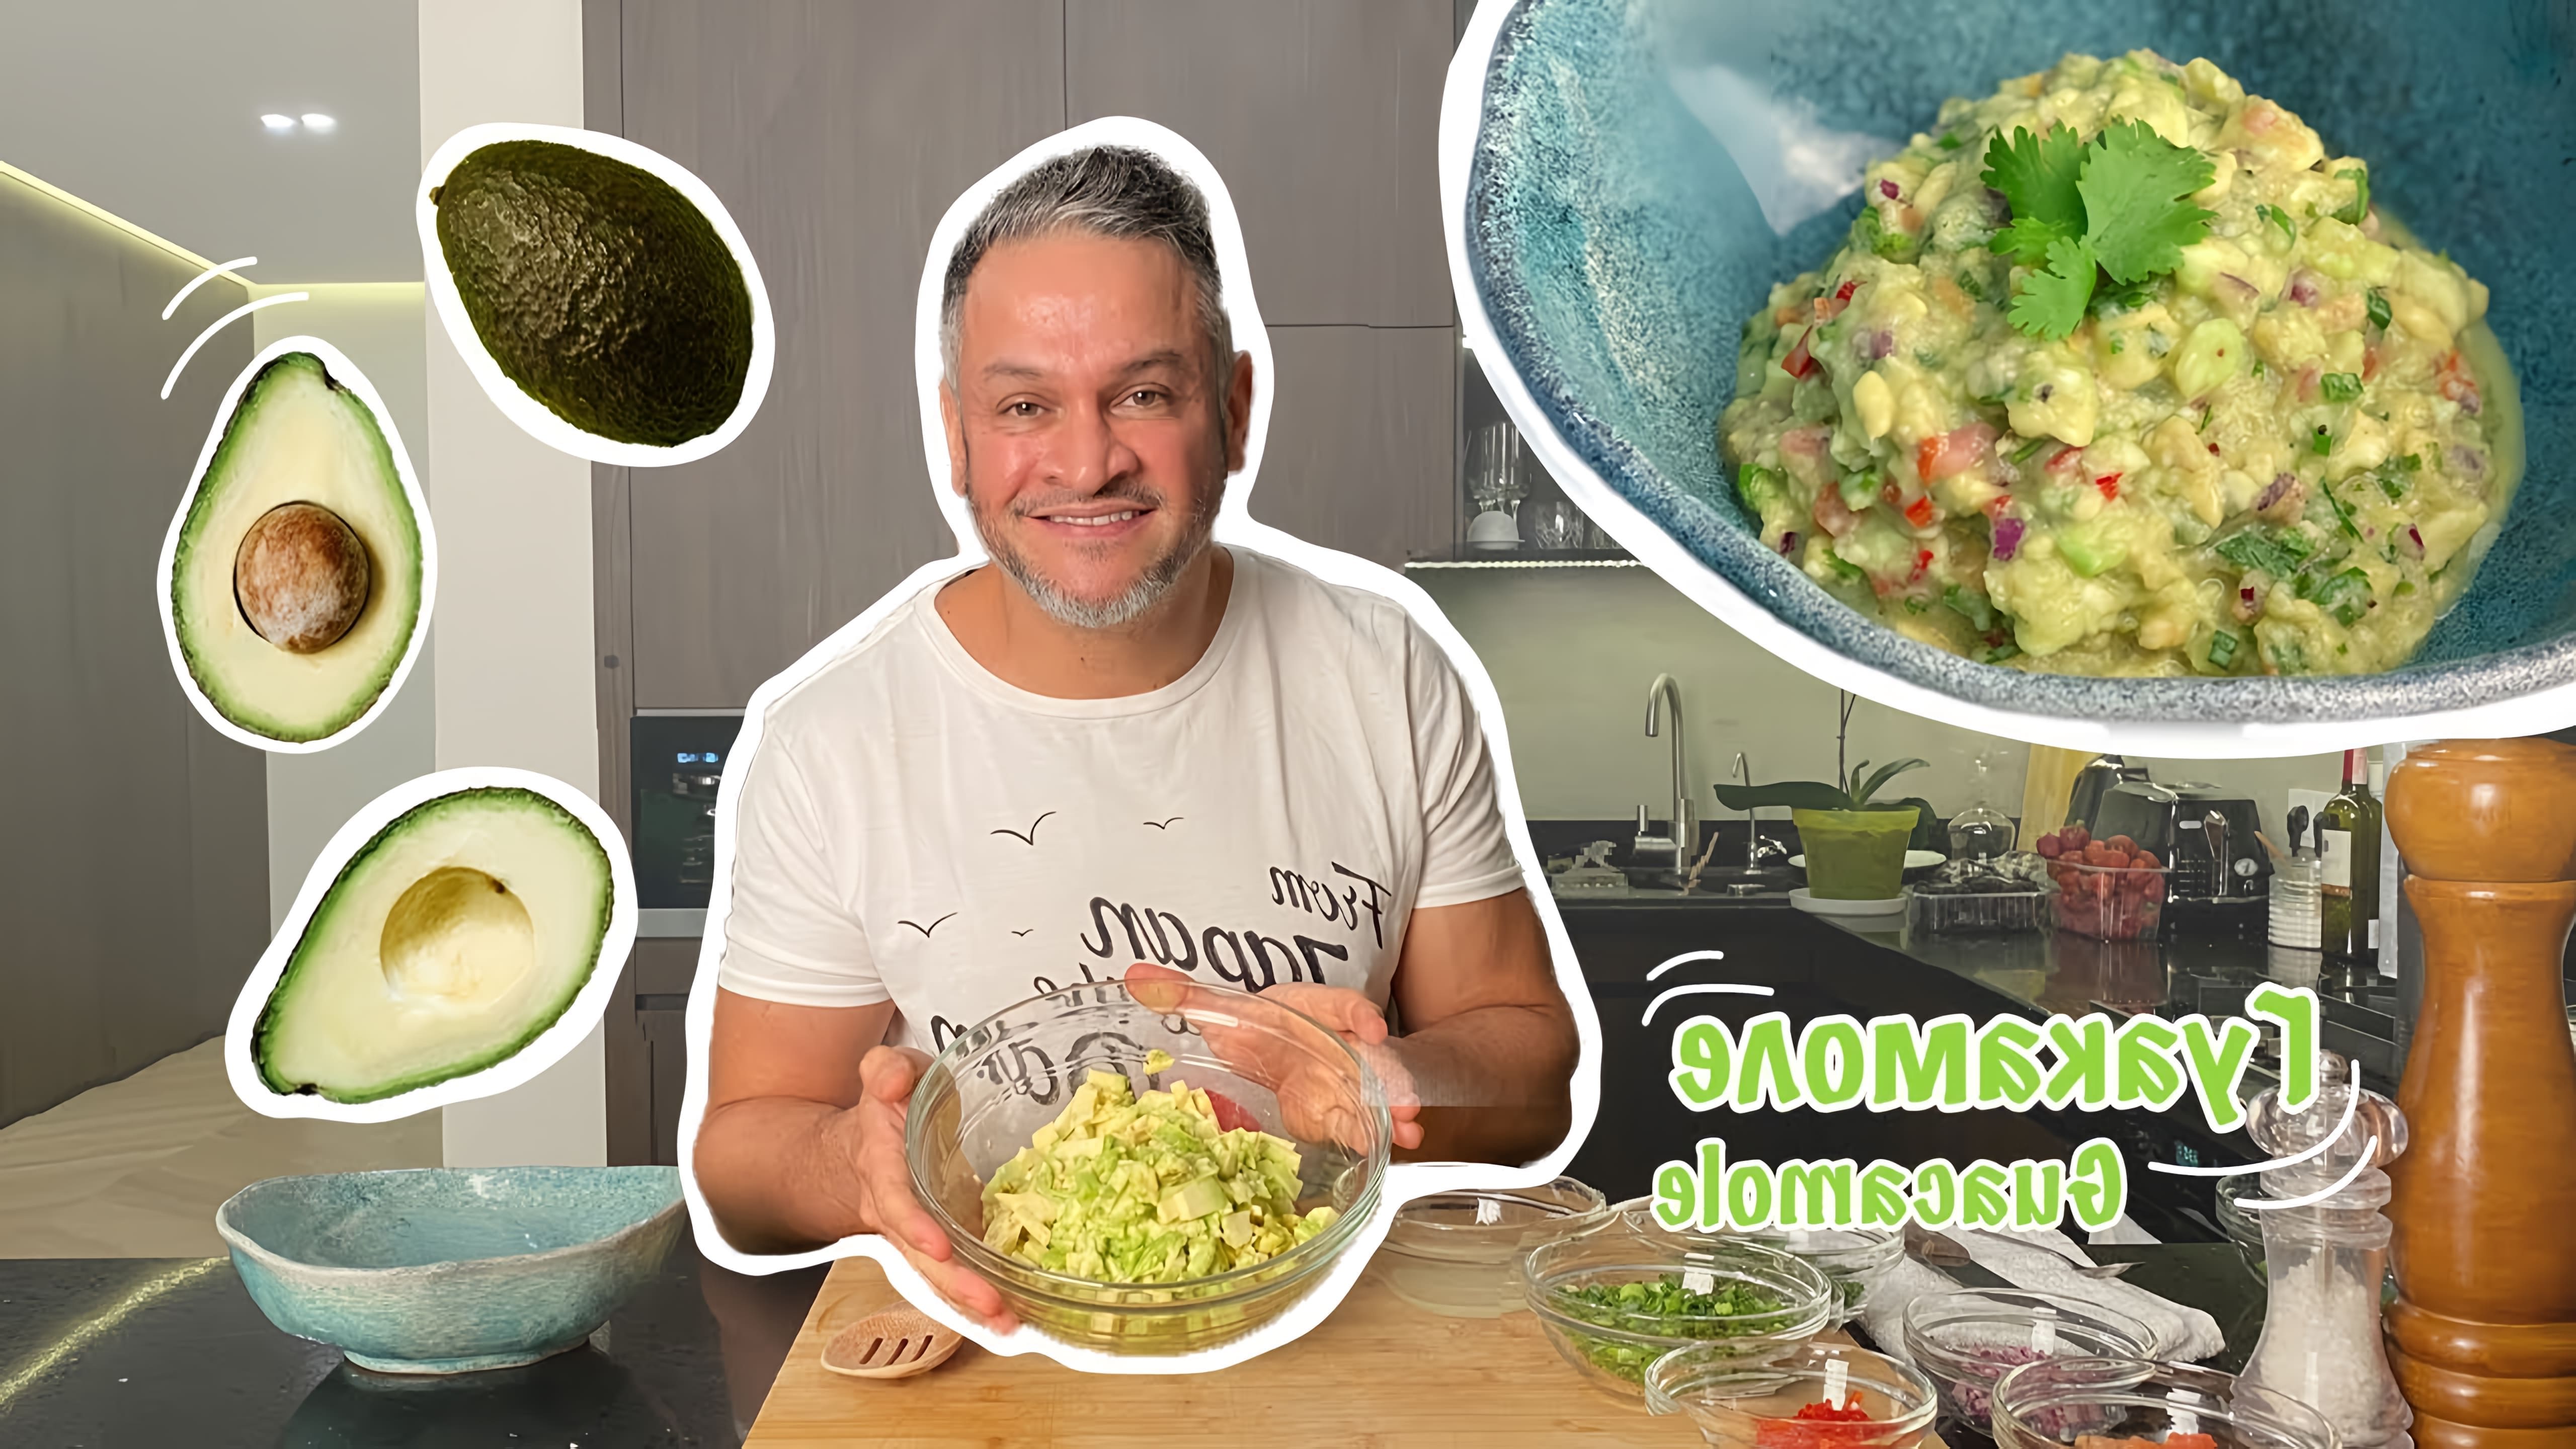 В этом видео-ролике Эктор, известный шеф-повар, готовит гуакомоле - традиционное мексиканское блюдо из авокадо